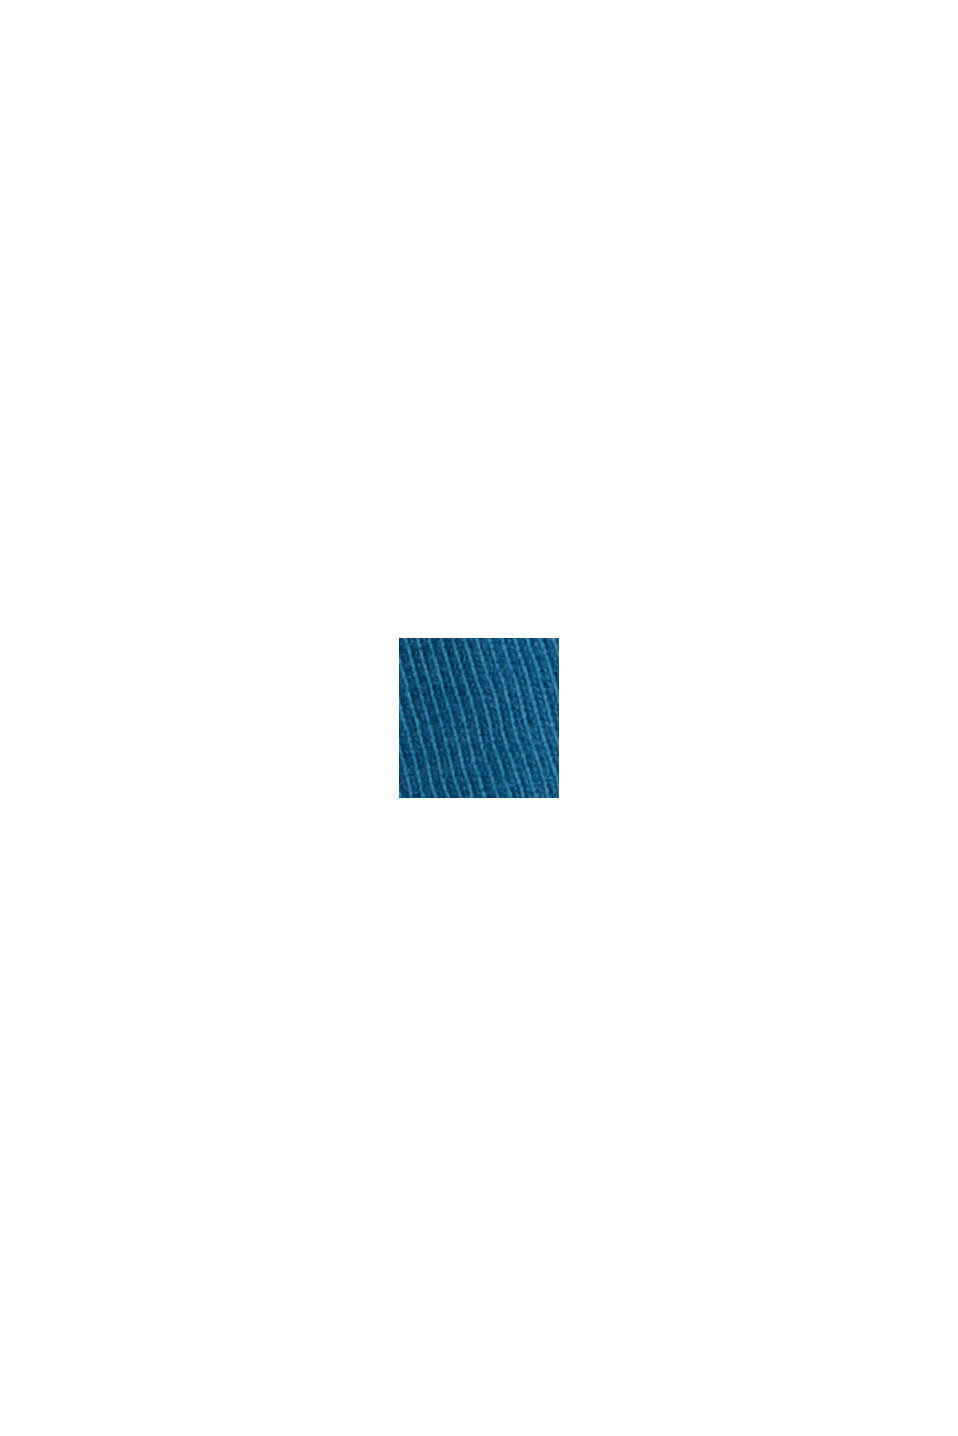 Maglia a manica lunga in jersey di cotone biologico, PETROL BLUE, swatch